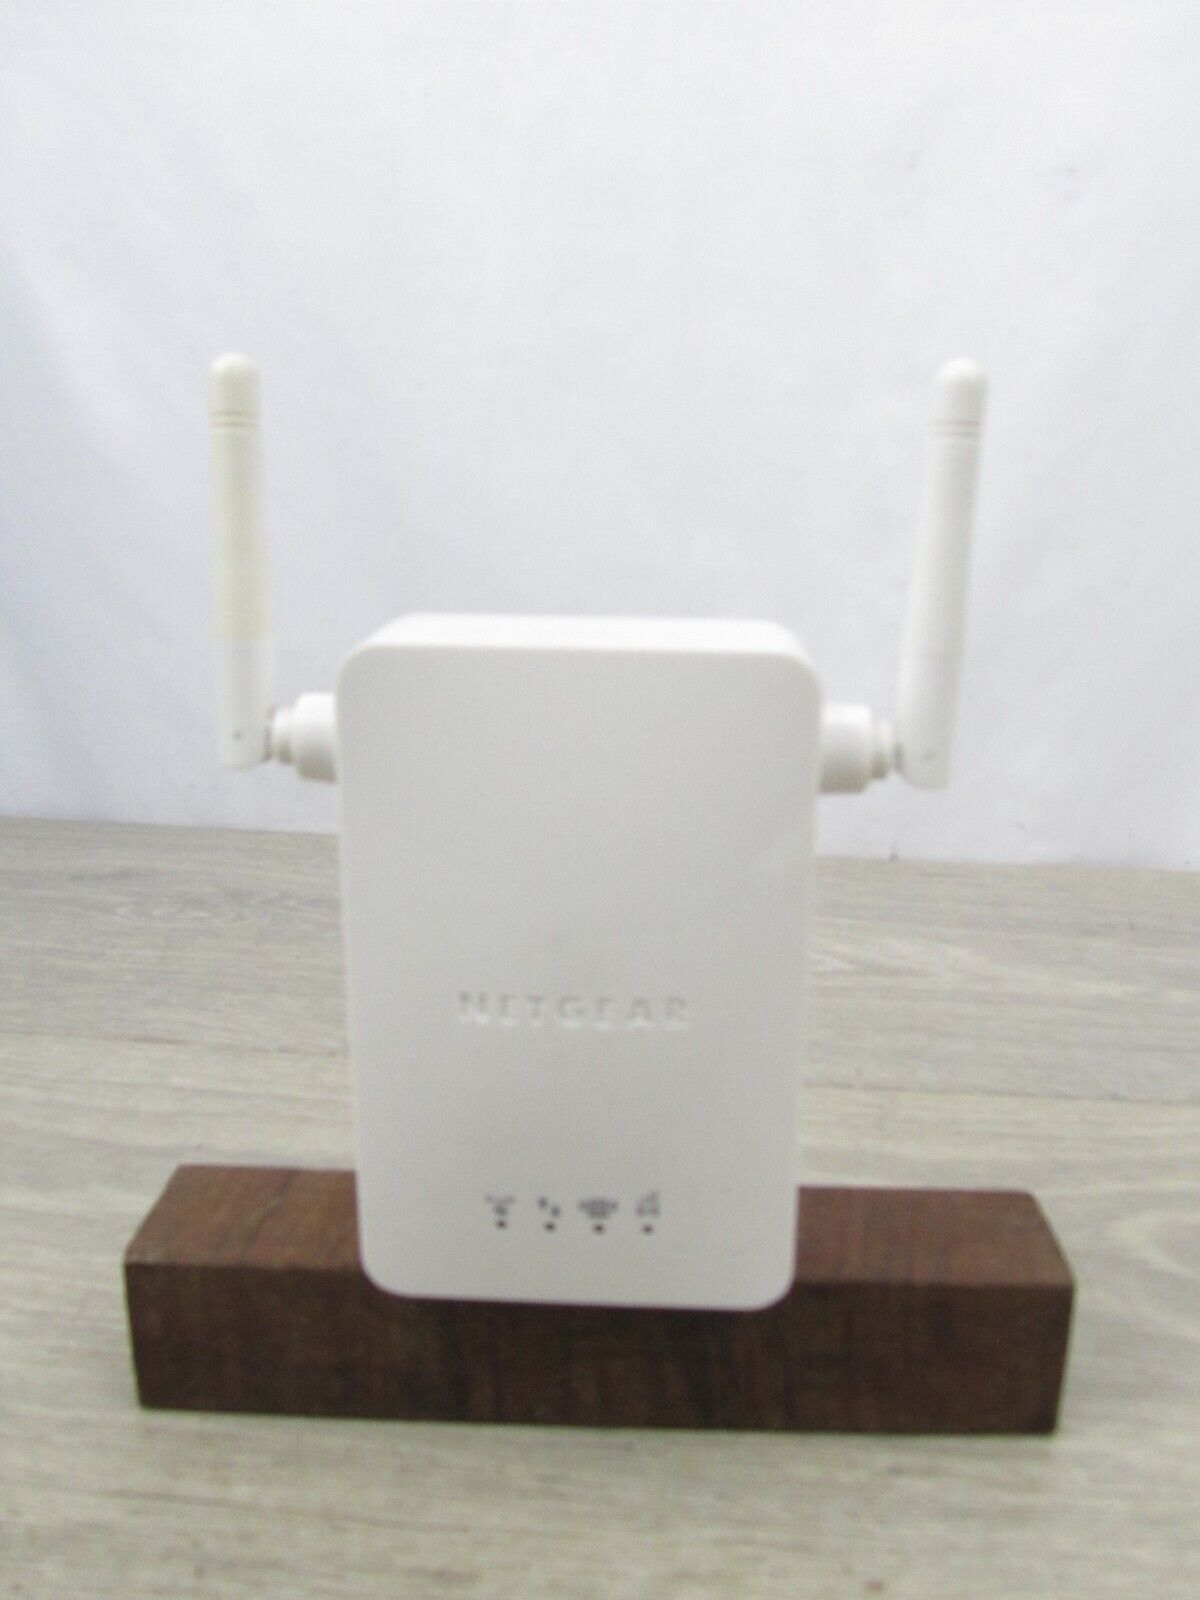 NETGEAR WN3000RP Universal WiFi Range Extender - White Tested